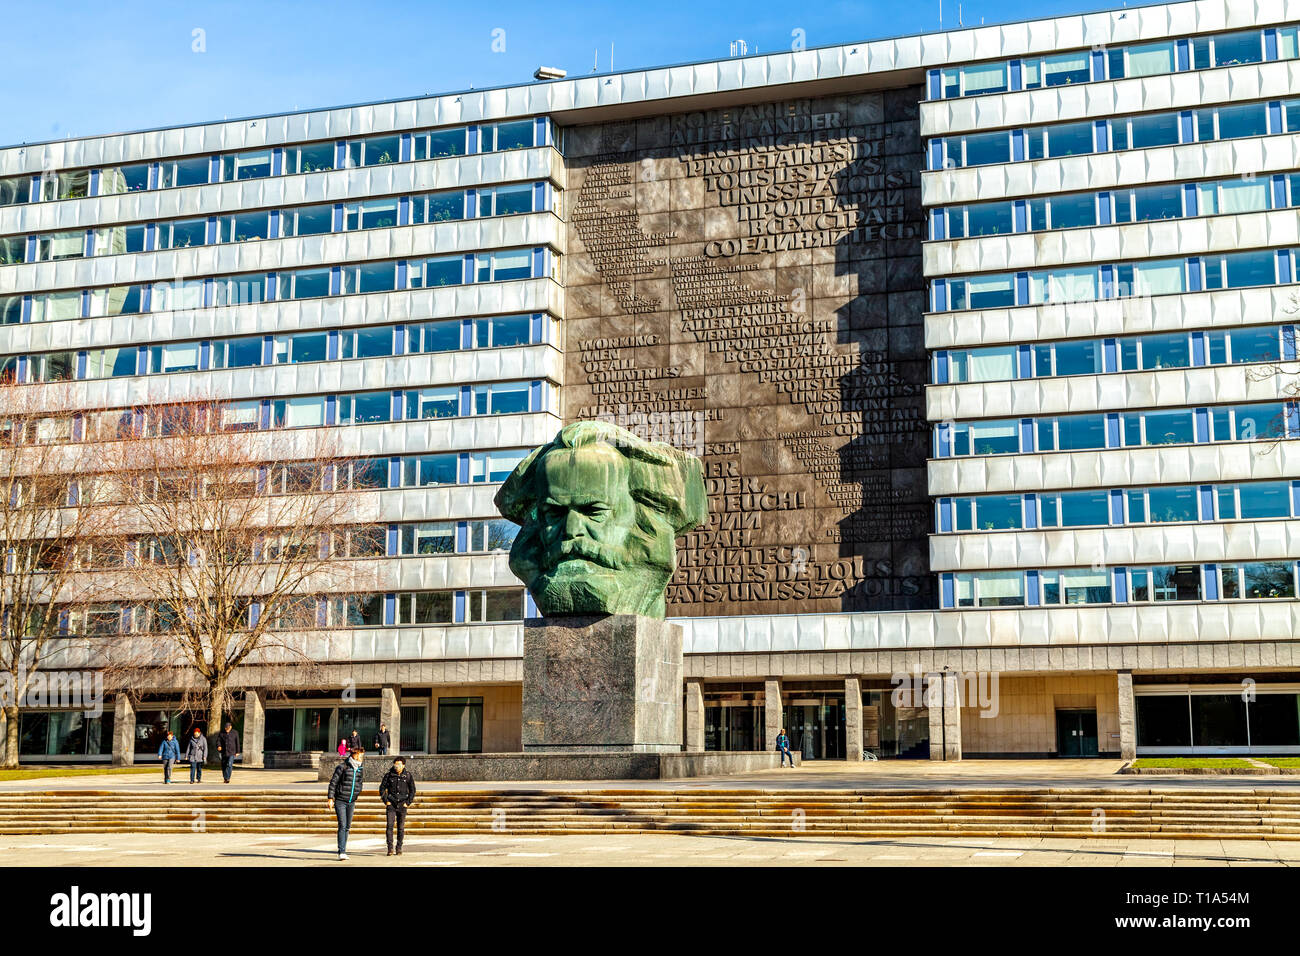 Karl Marx Monument, Chemnitz, Germany Stock Photo